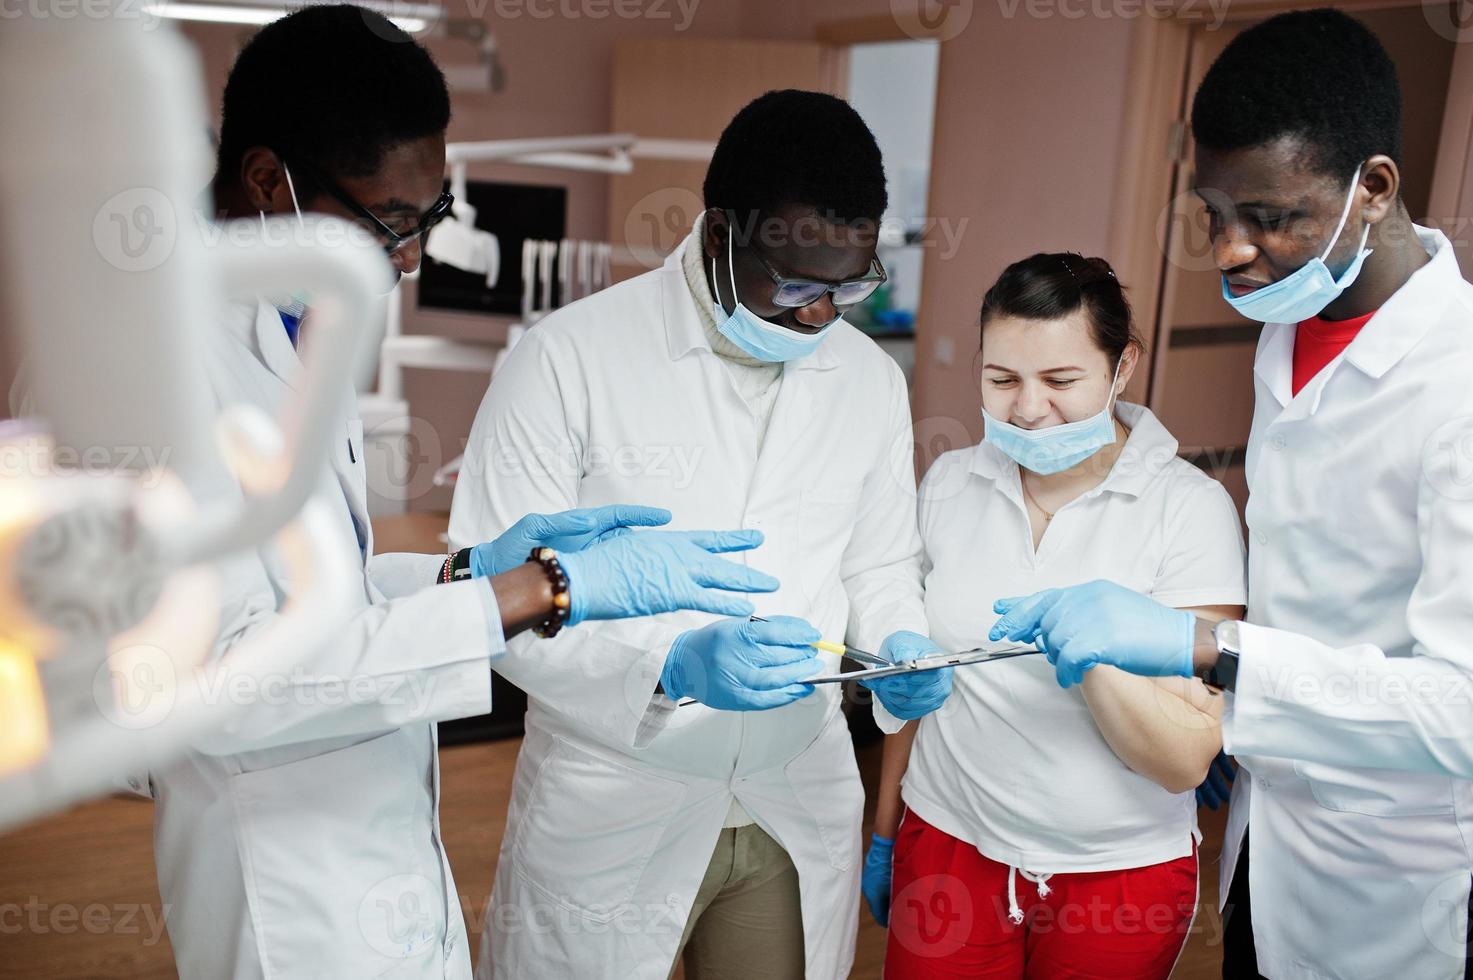 multiraciale tandarts artsen team. drie Afro-Amerikaanse mannelijke artsen met een blanke vrouwelijke arts. bespreking van werkmomenten. foto